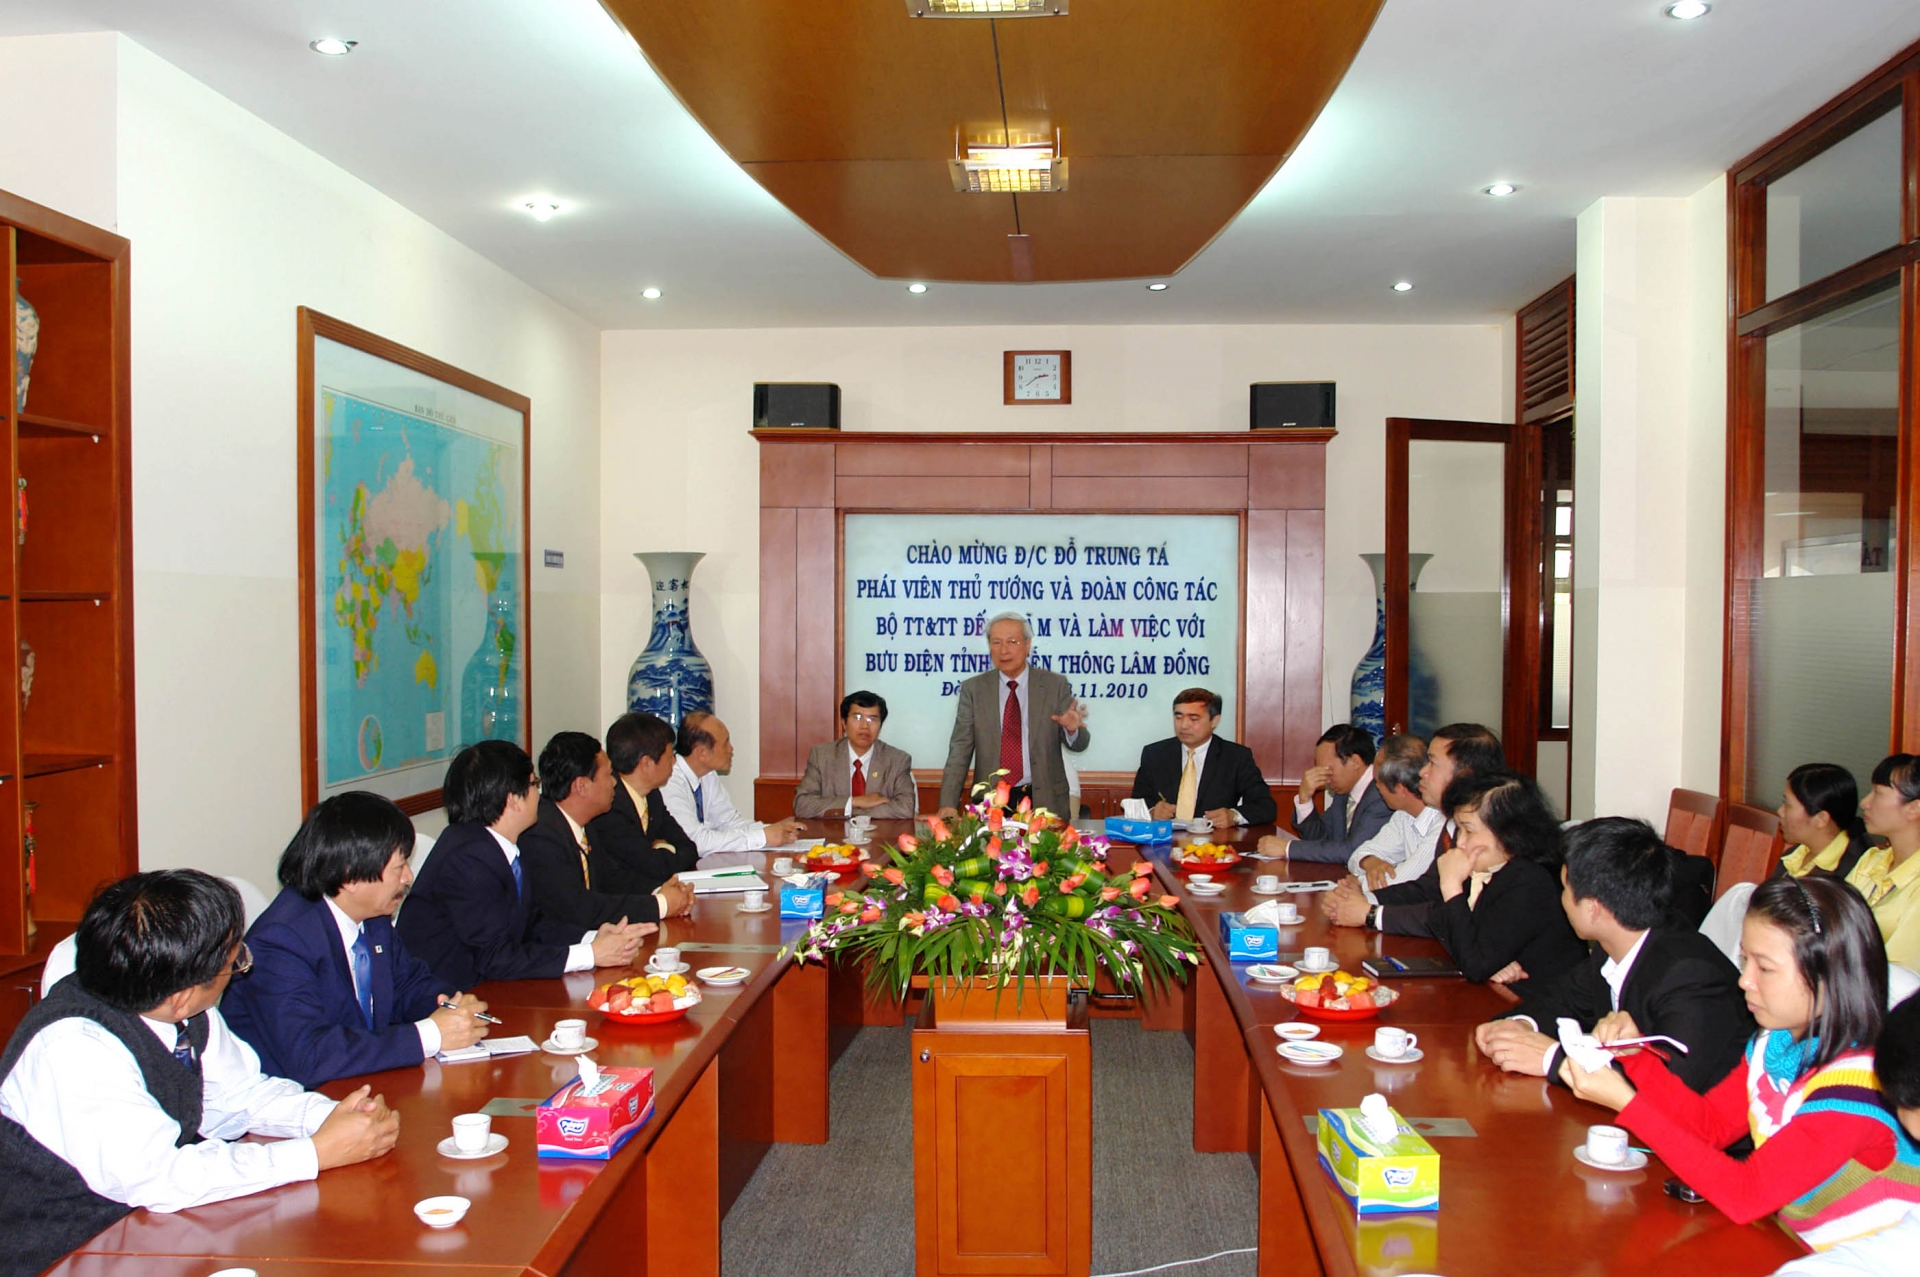 Đoàn làm việc tại Bưu Điện và Viễn thông Lâm Đồng. 